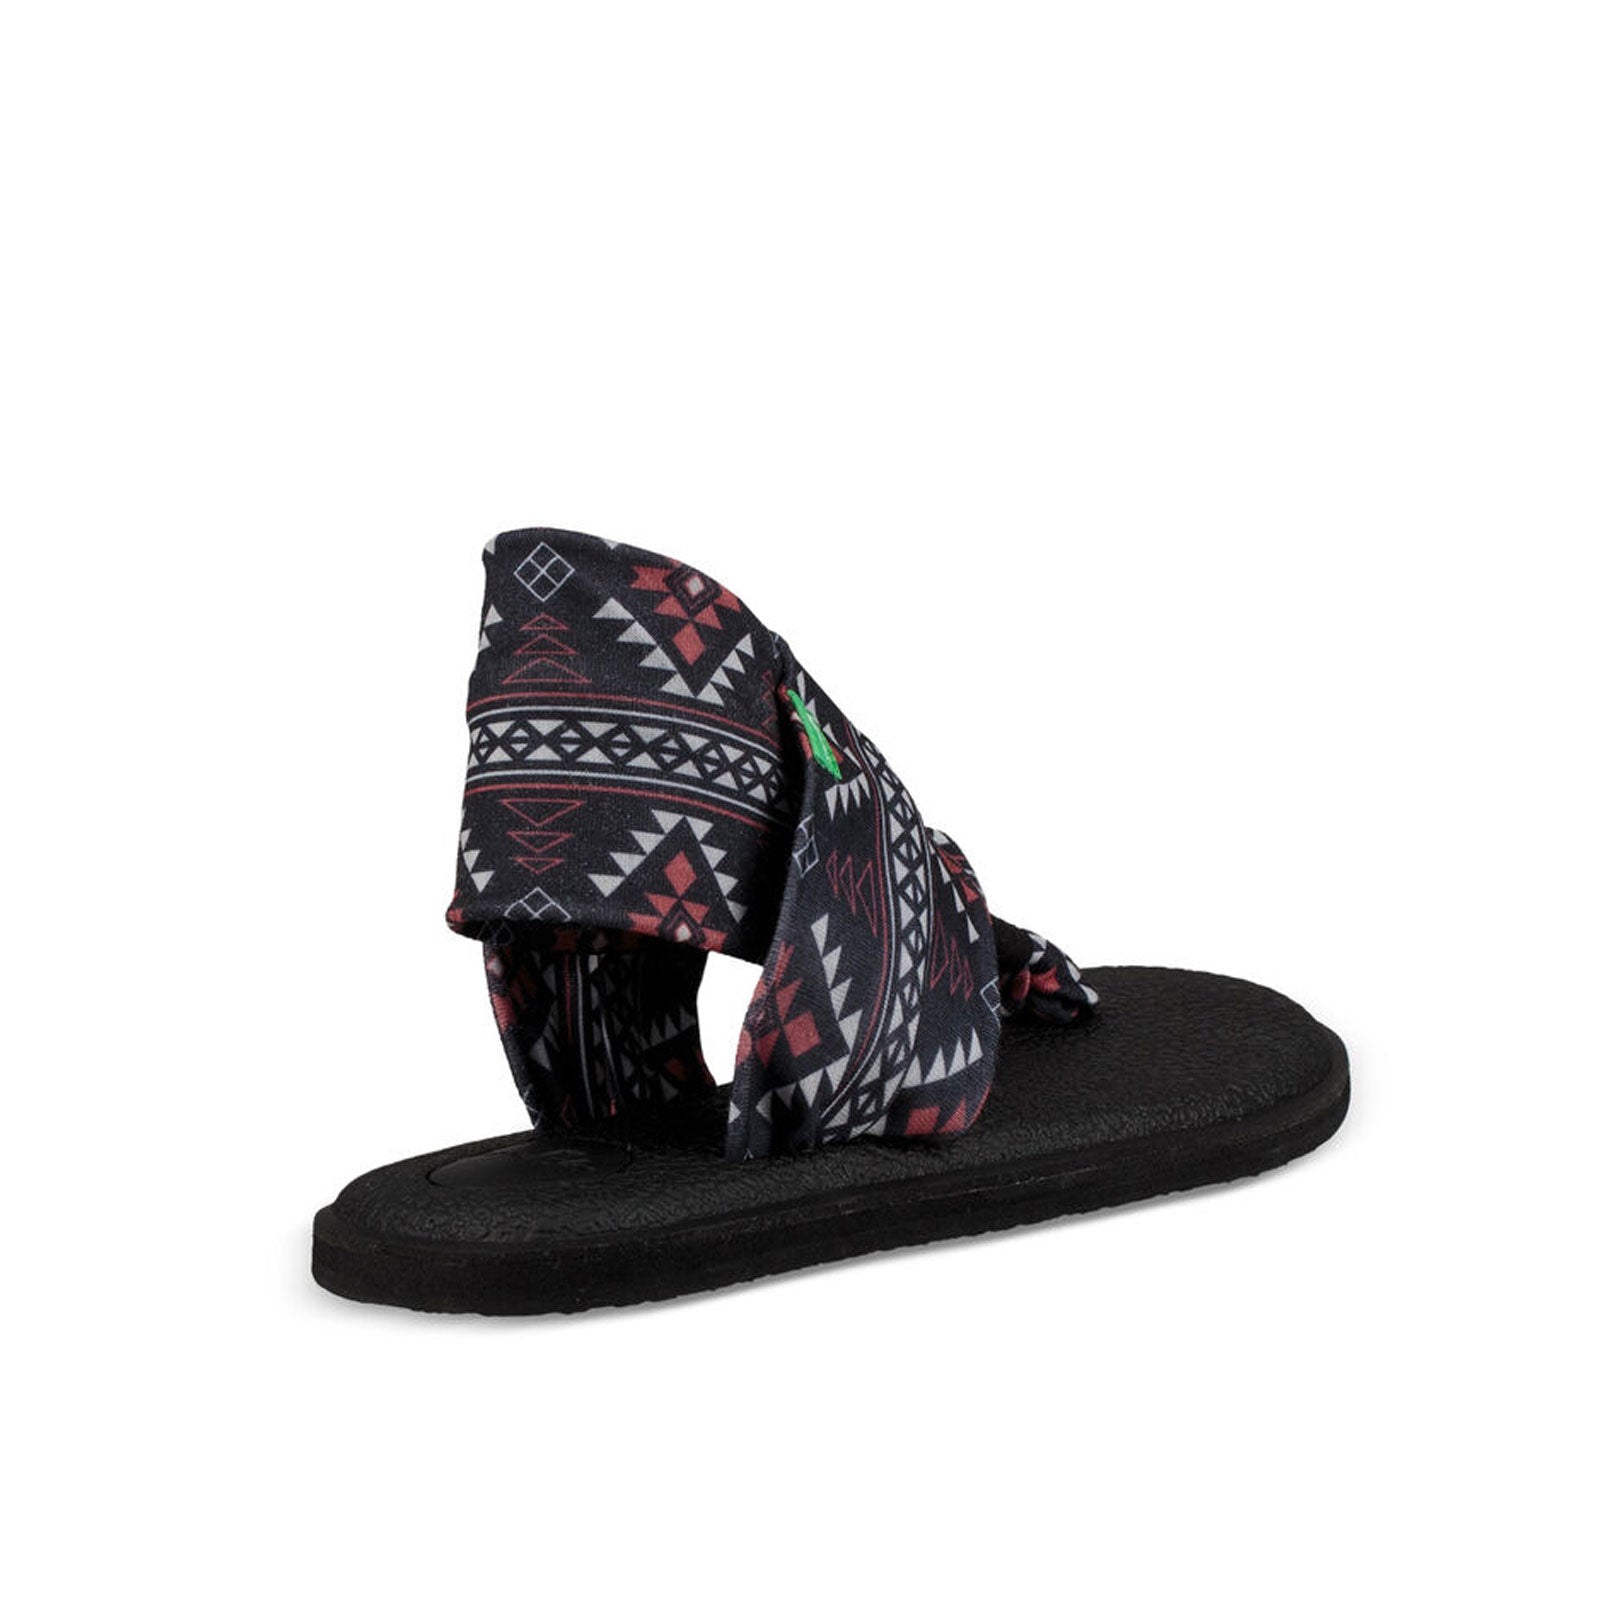 Sanuk, Shoes, Nwot Sanuk Womens Yoga Sling 2 Prints Melon Tile Casual  Flip Flop Sandals